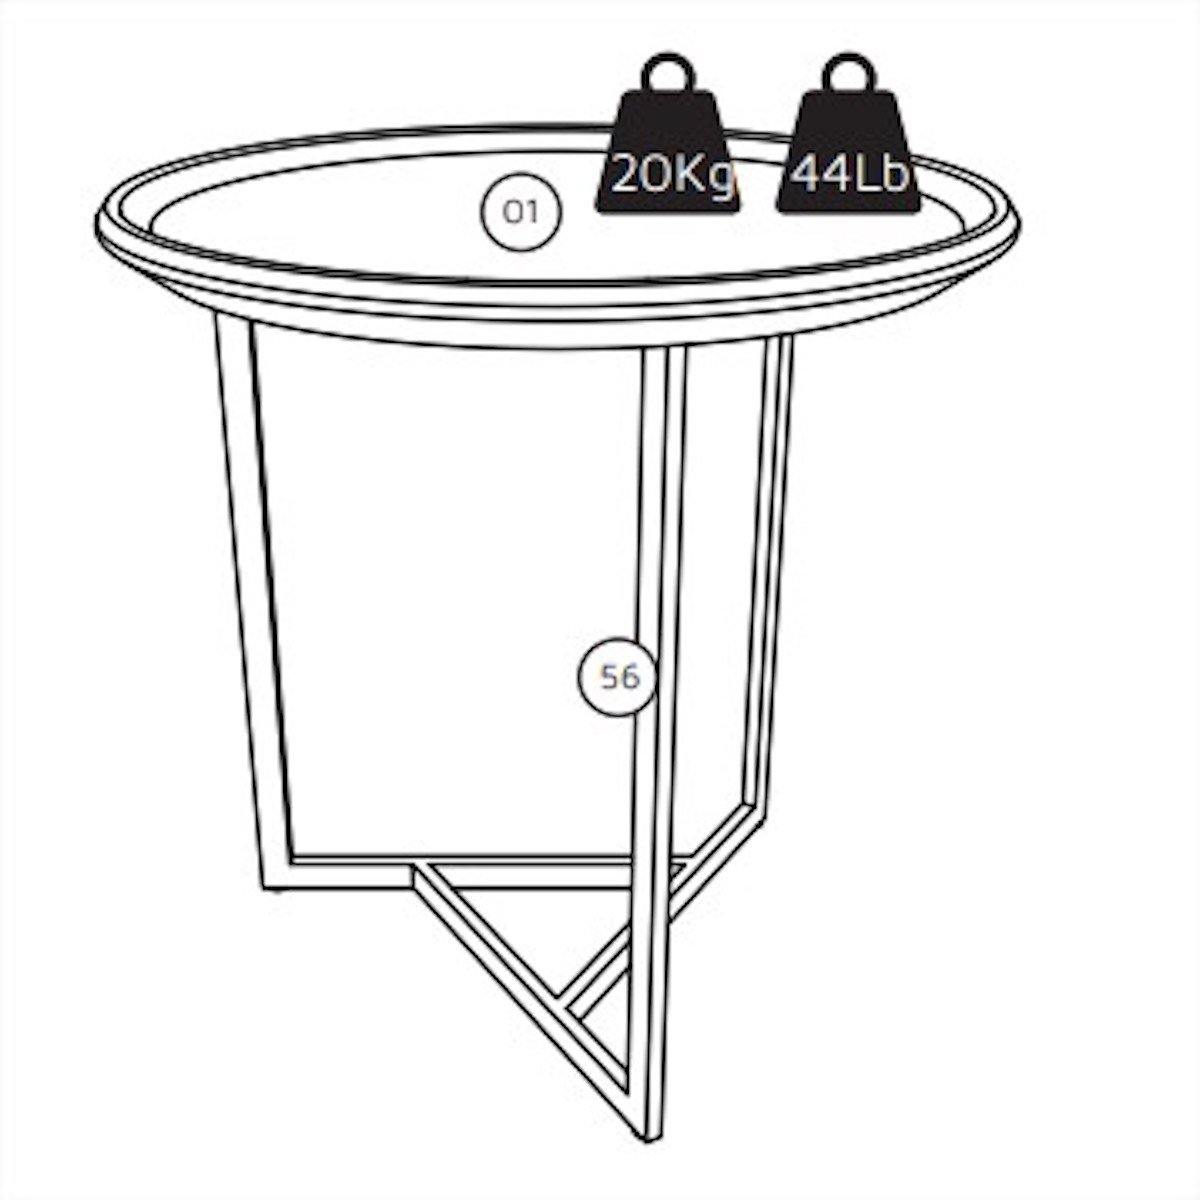 Manhattan Comfort Knickerbocker 19.29" Modern Round End Table with Steel Base in Cinnamon 254451 Weight Limit